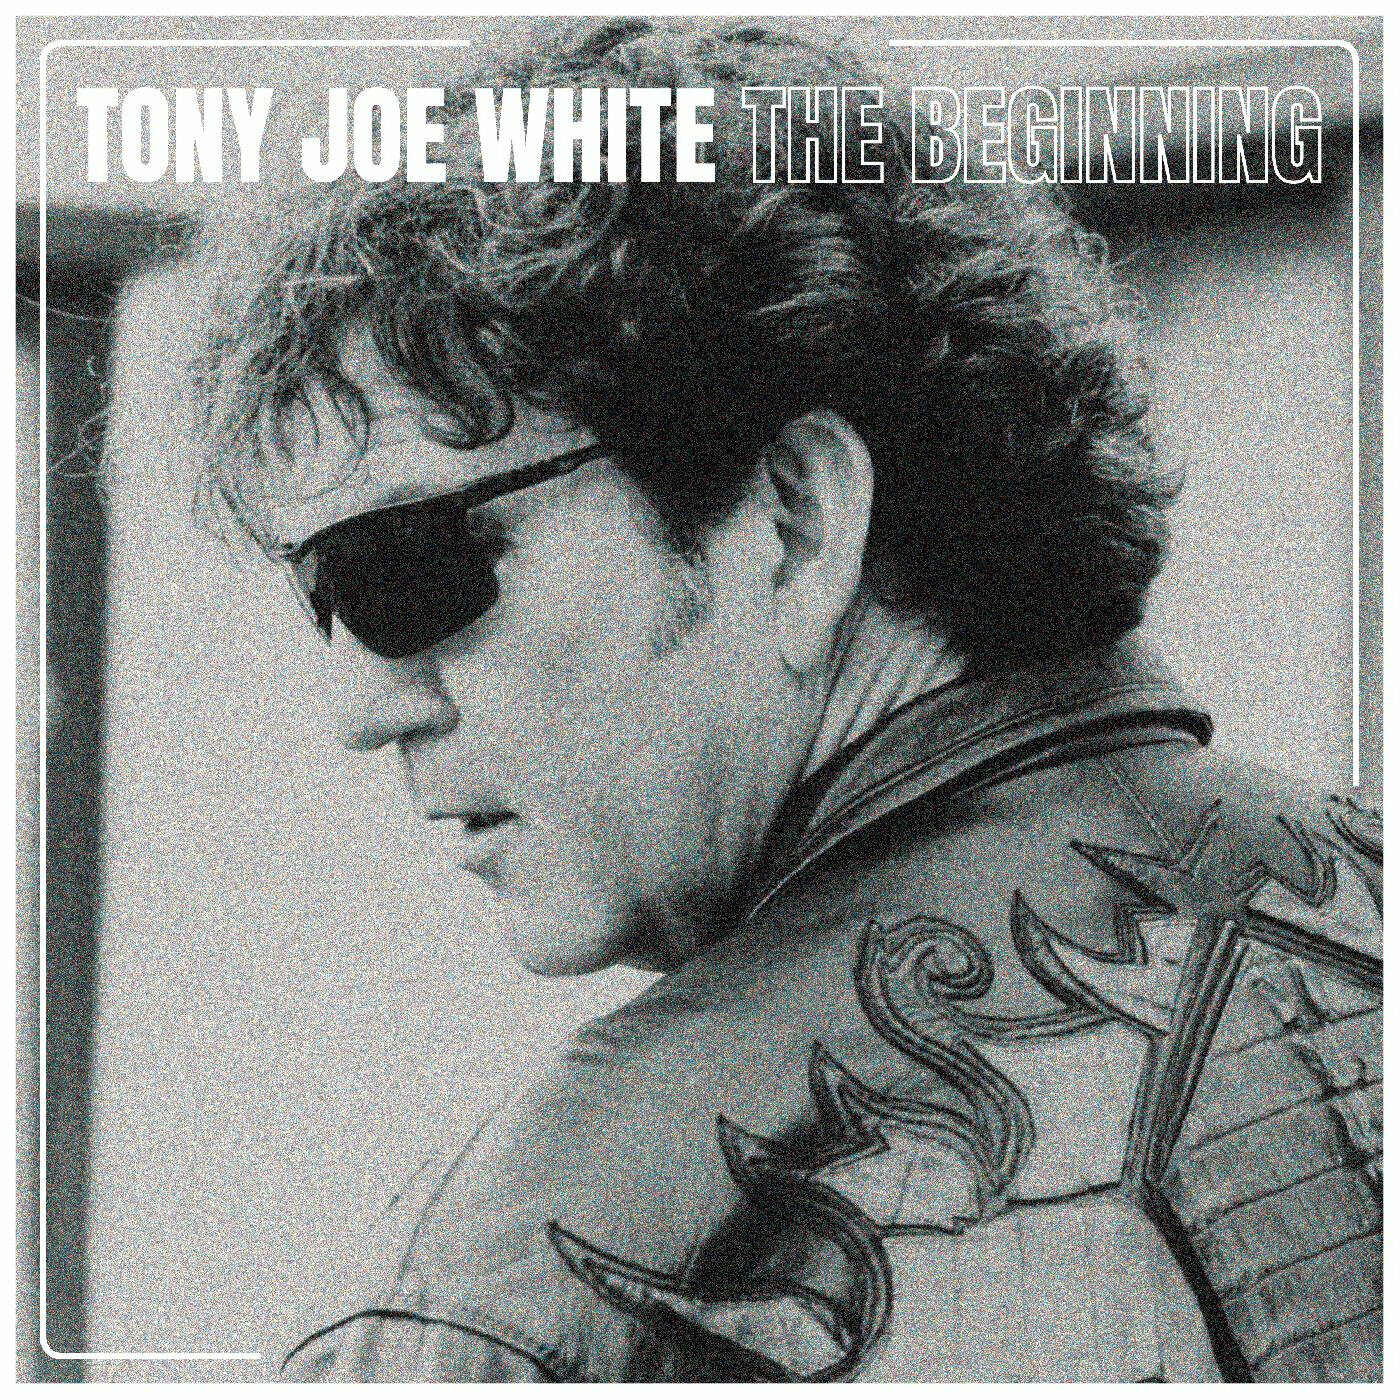 Tony Joe White - The Beginning (LP) Tony Joe White